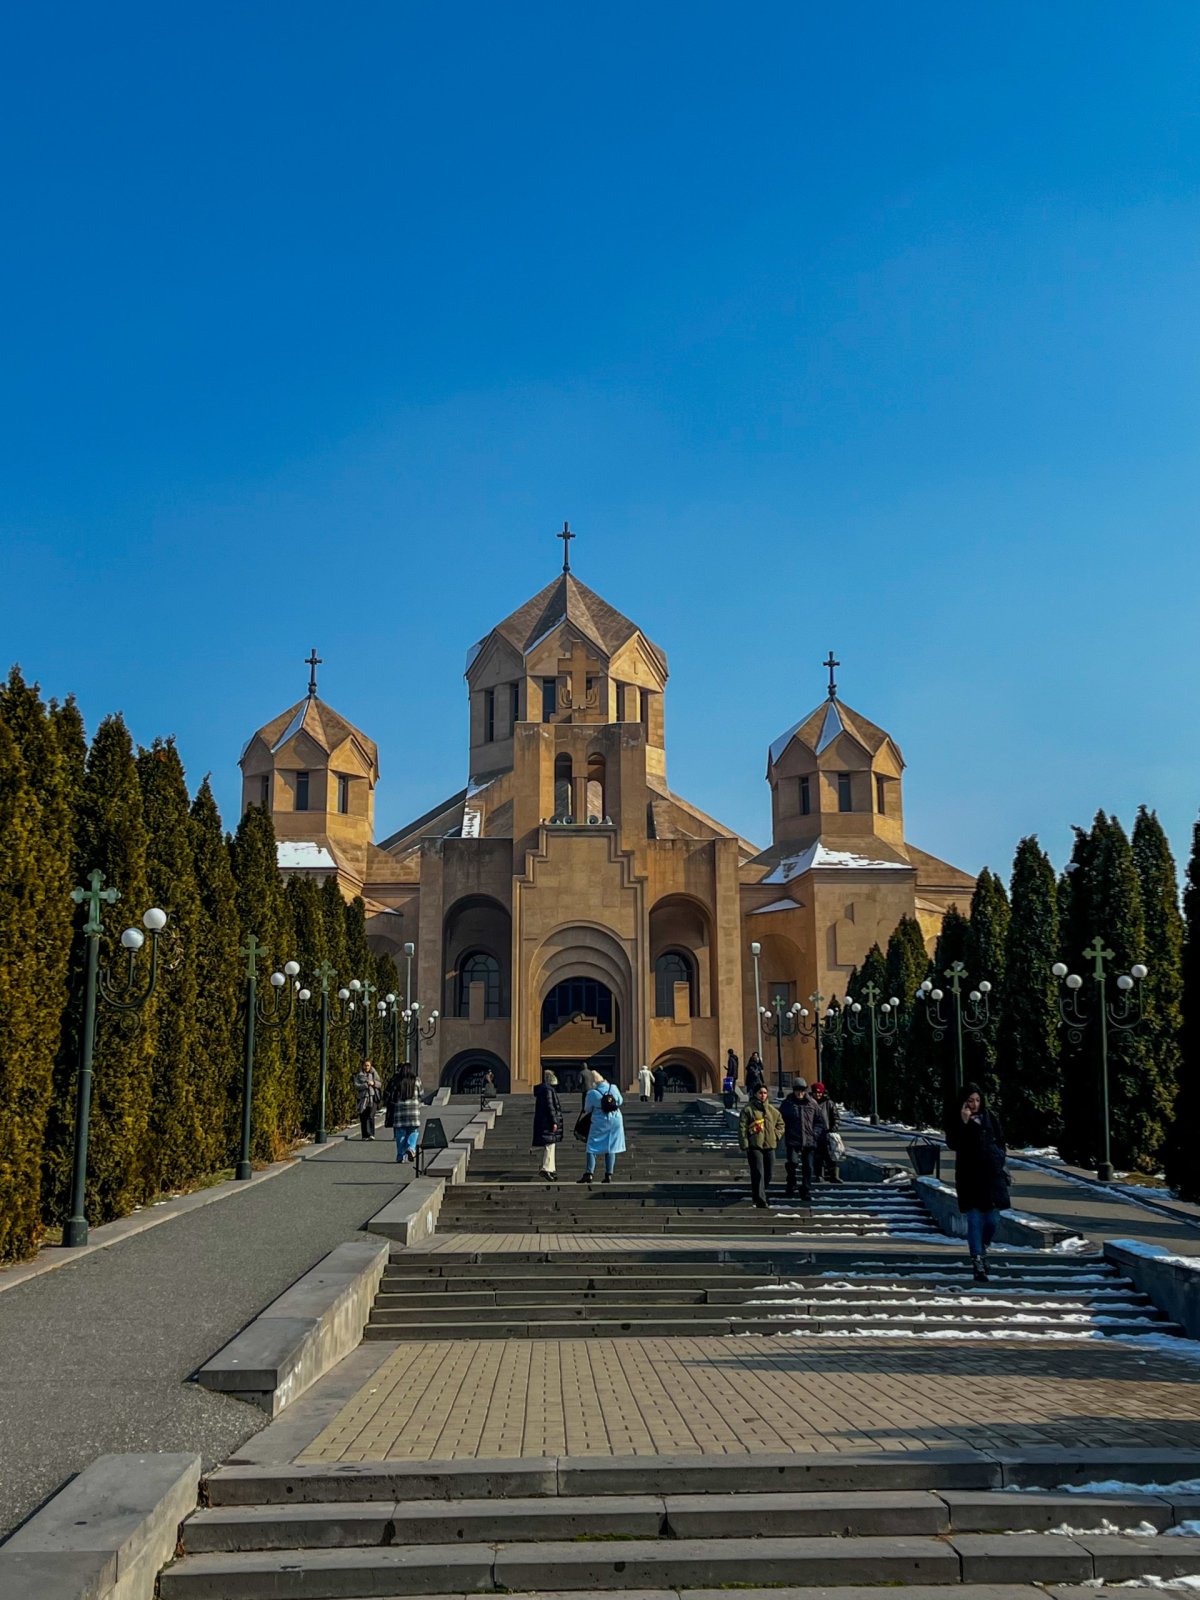 největší kostel v zemi, katedrála sv. Řehoře